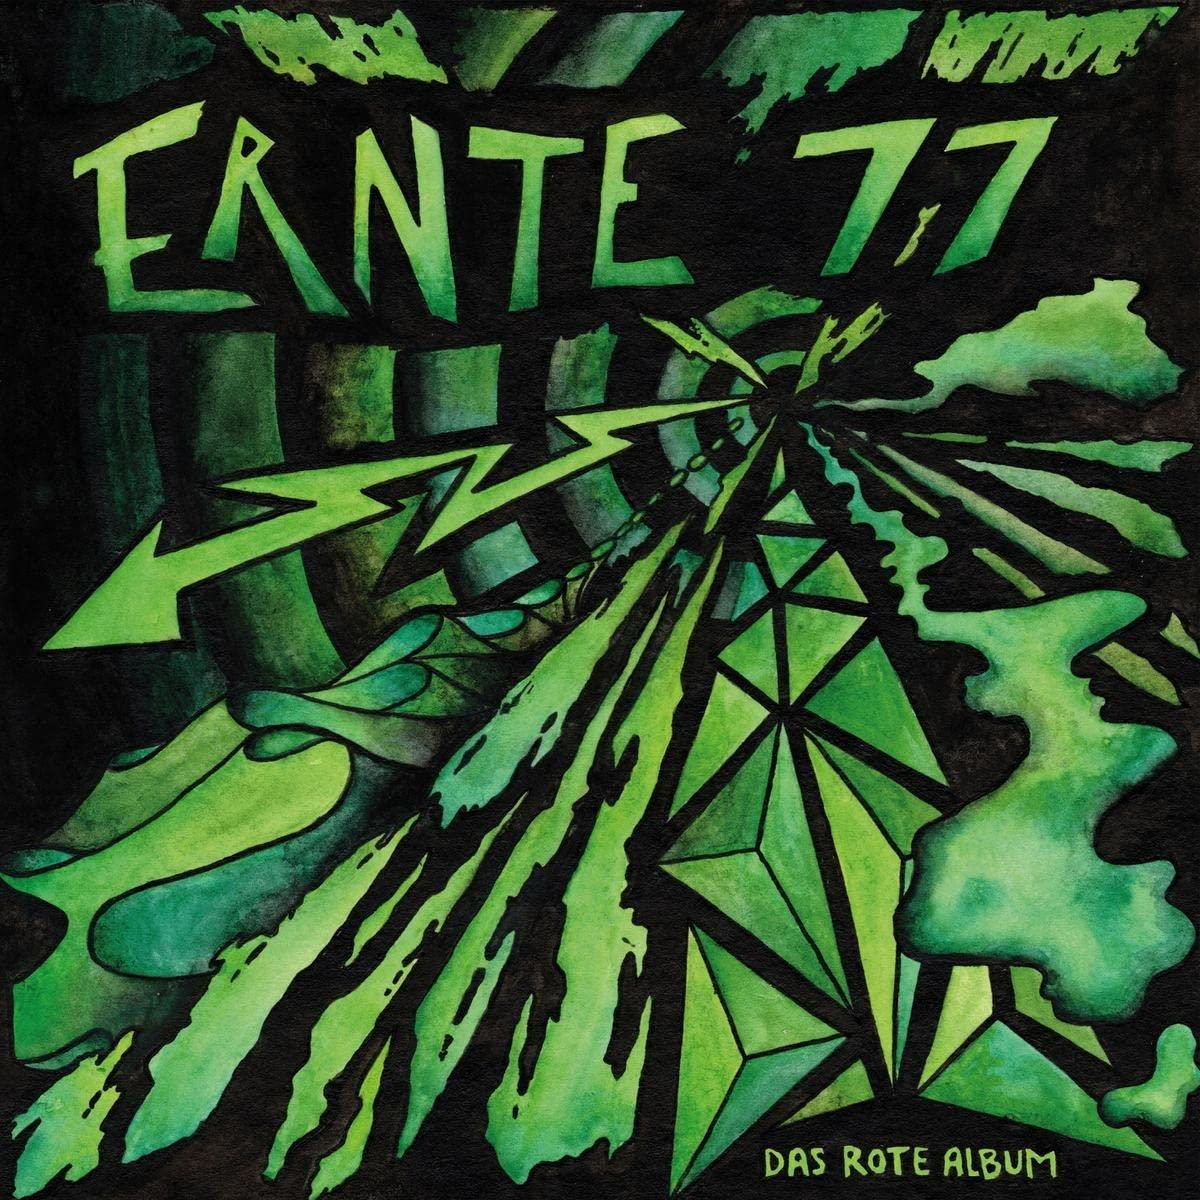 Ernte 77 - Das (CD) rote - Album